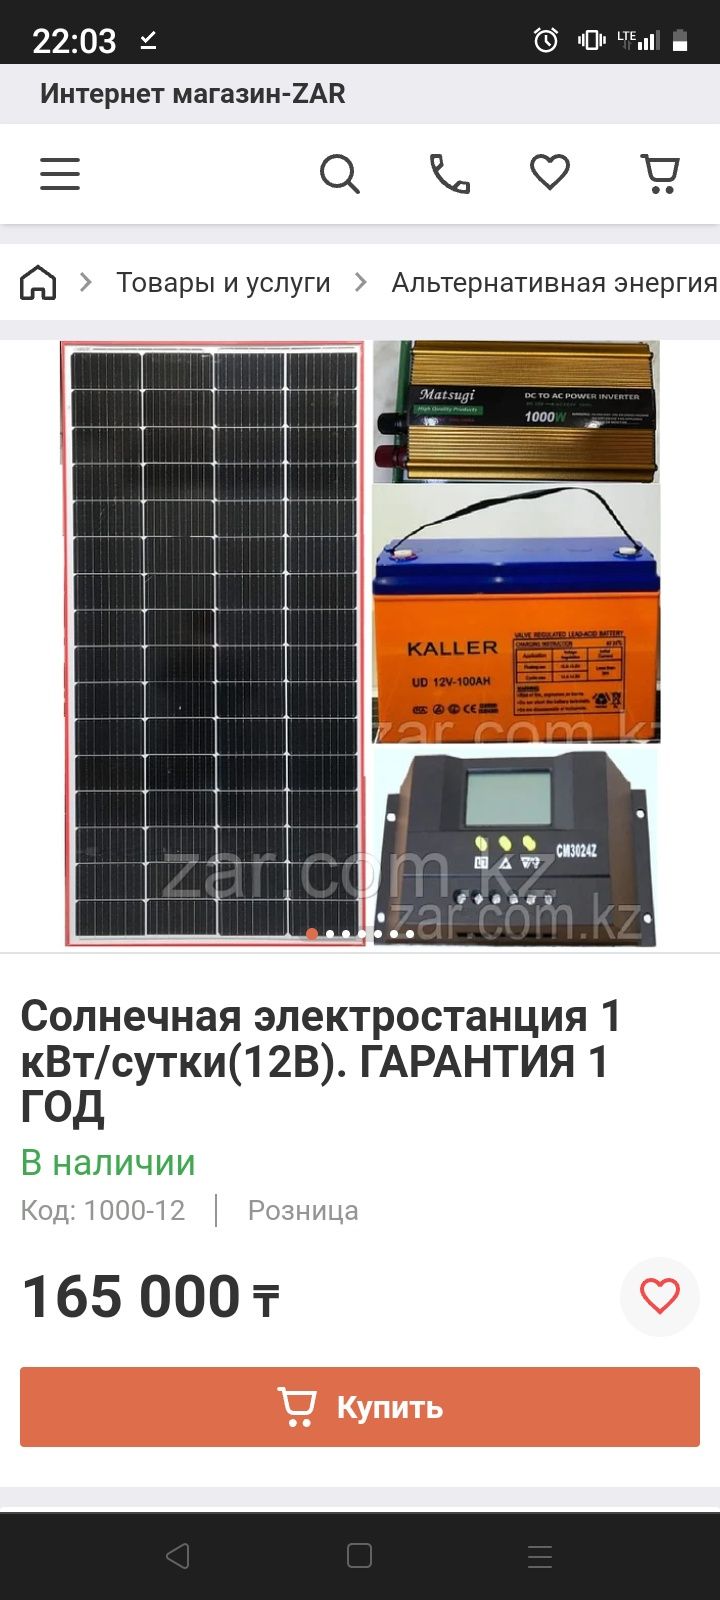 Продажа и монтаж солнечных электростанций, индивидуальная комплектация